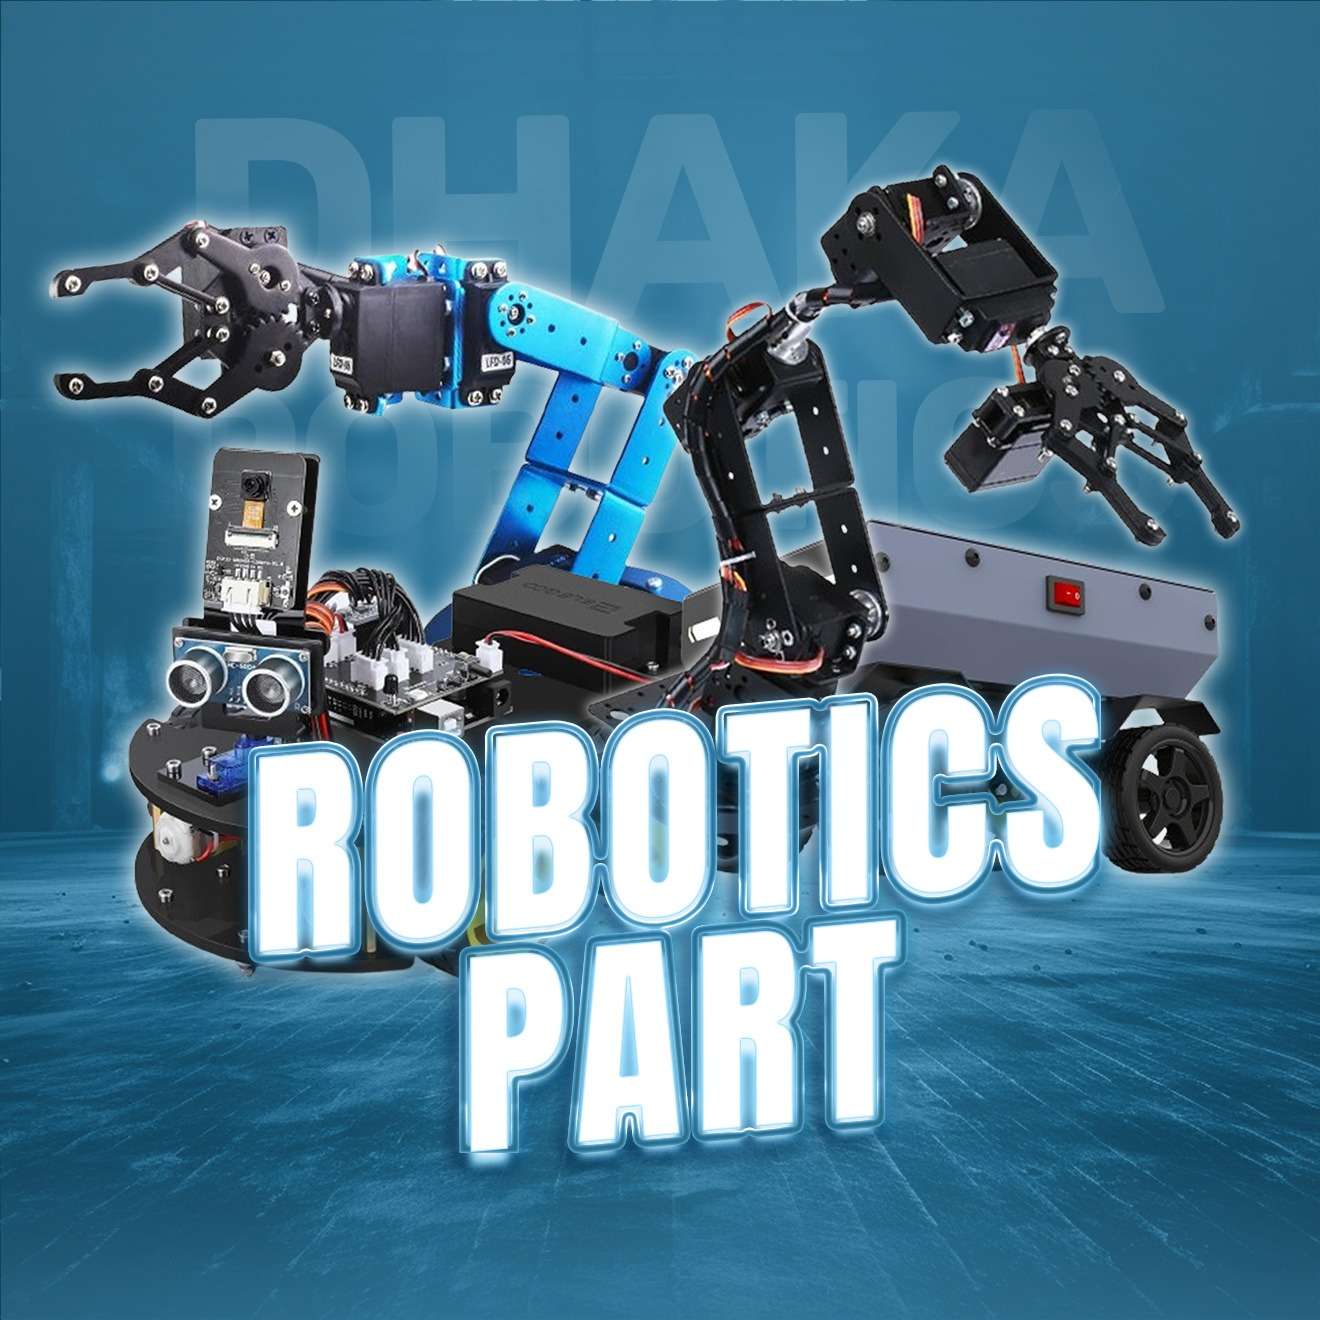 Robotics Parts